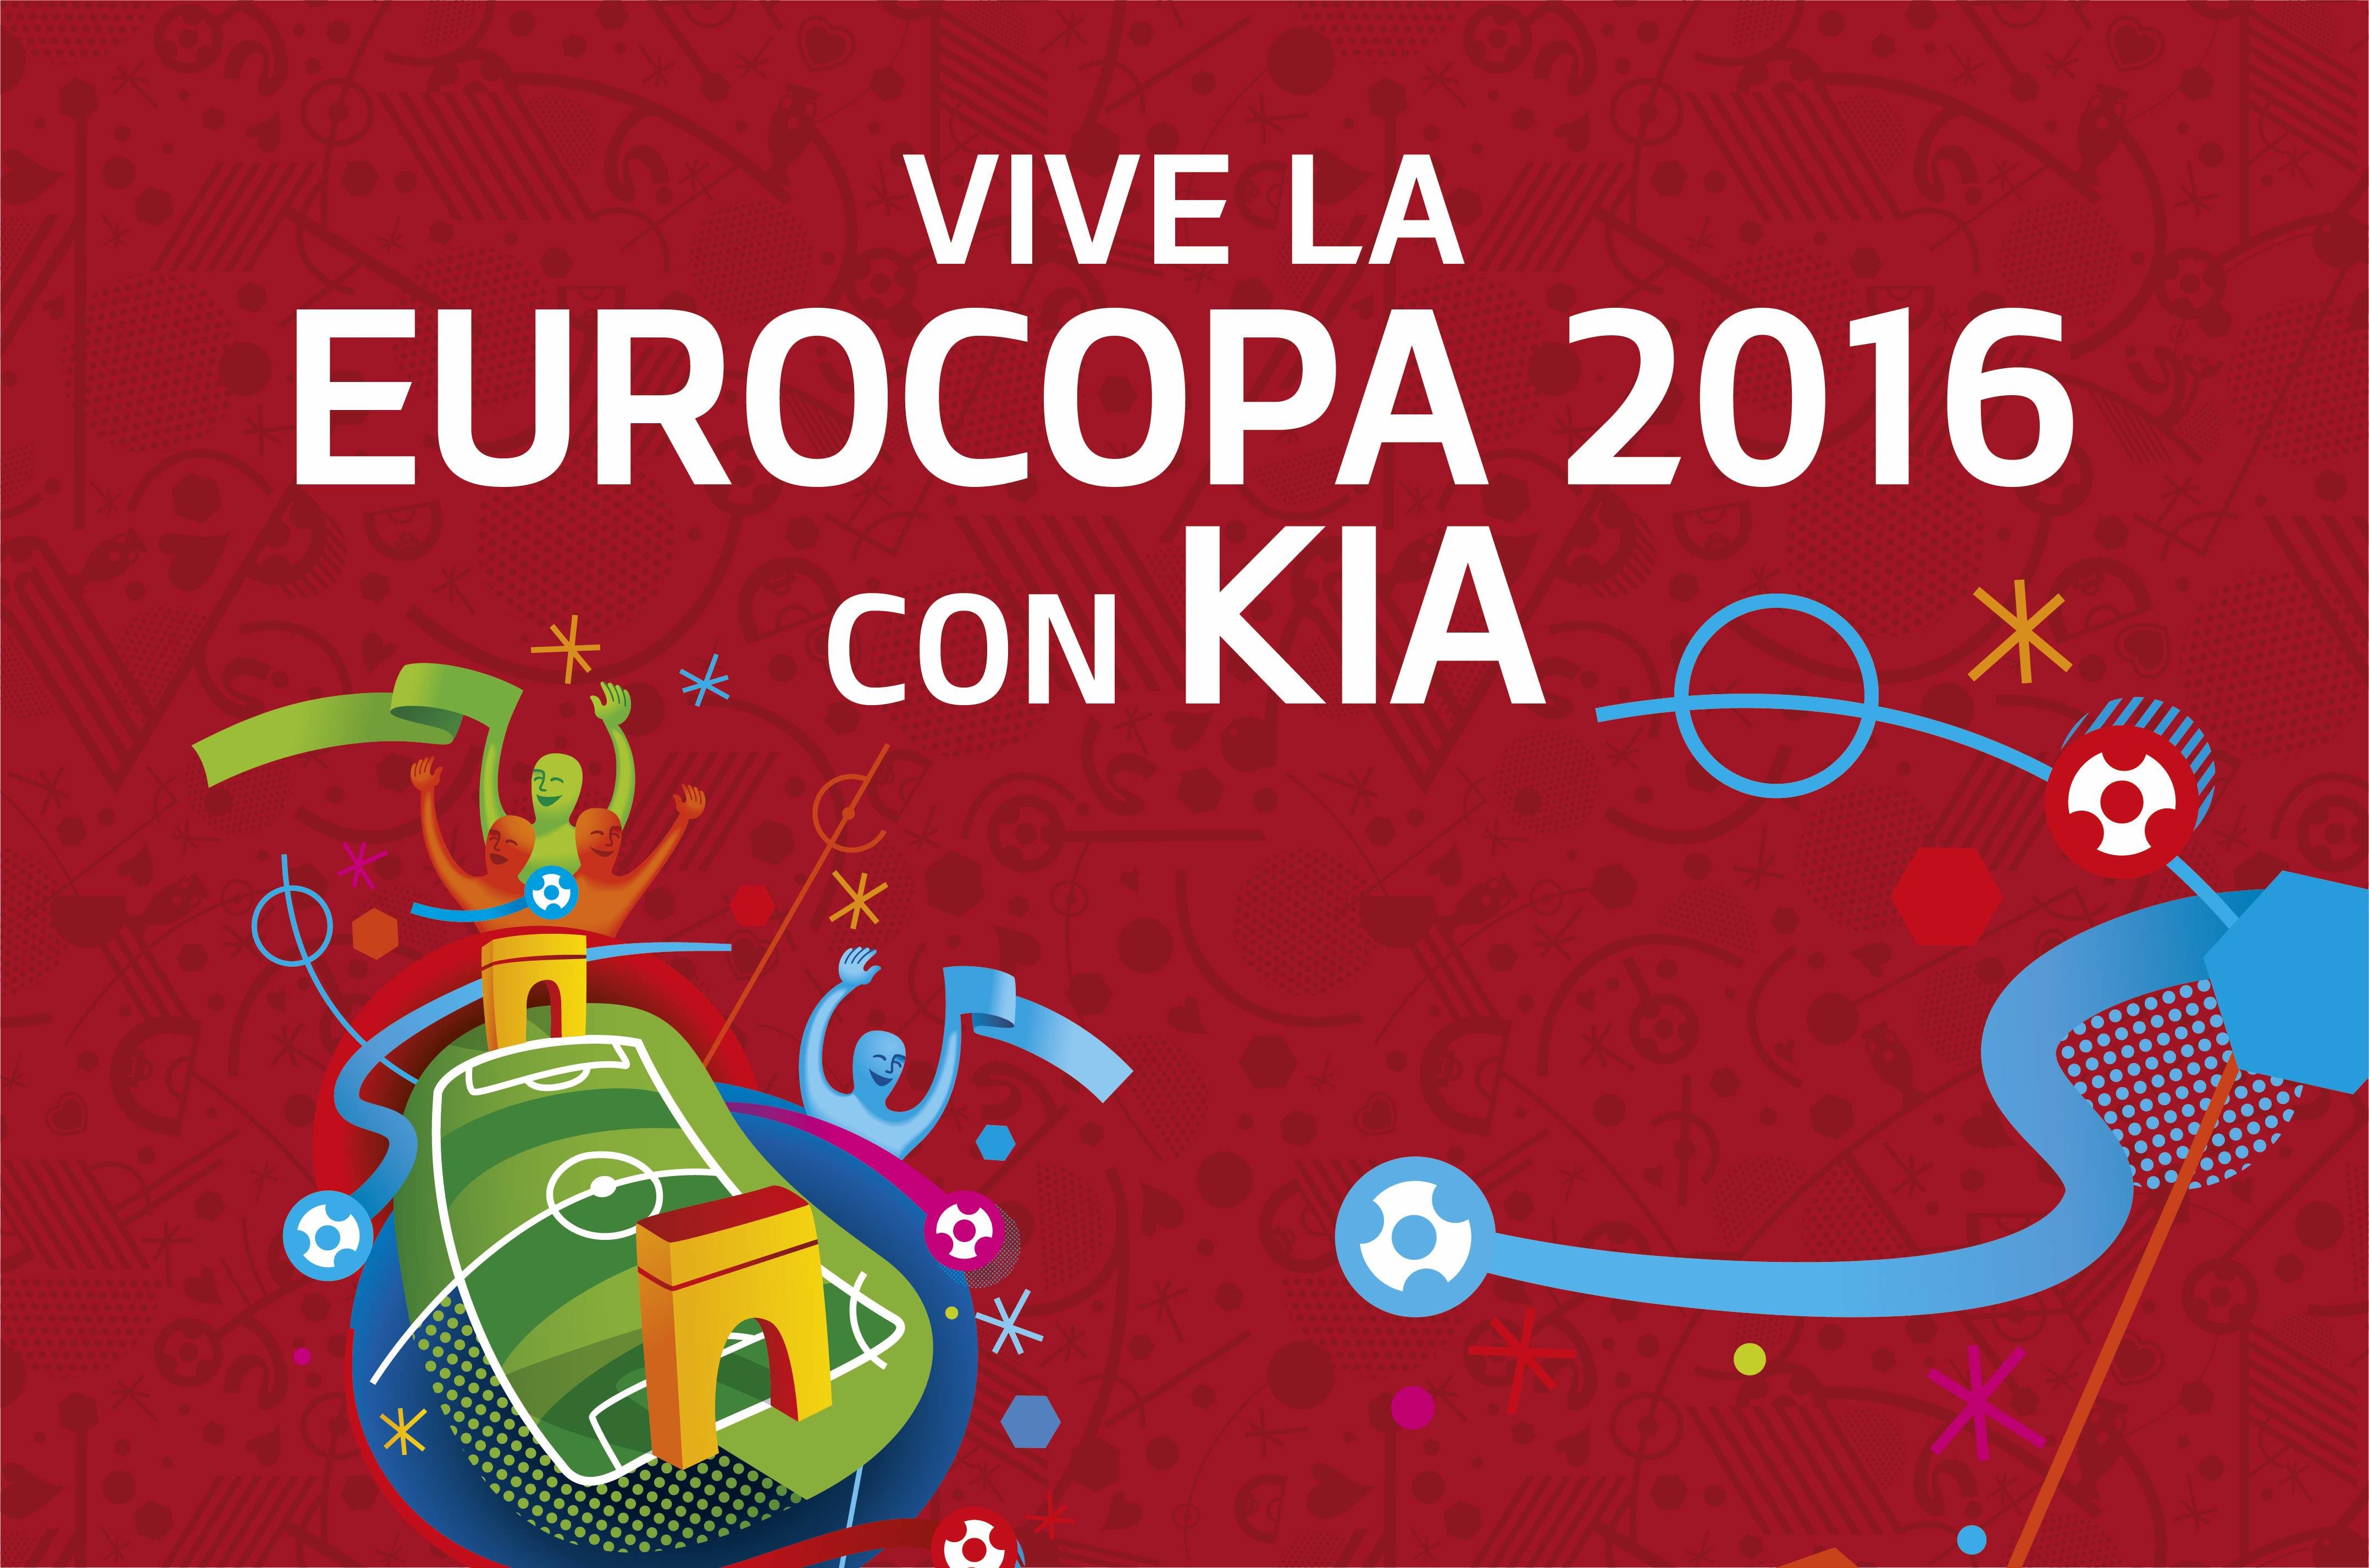 Cumple tu sueño: Vive la Eurocopa 2016 con Kia | Deltaprat, Concesionario Kia en El Prat de Llobregat (Barcelona)